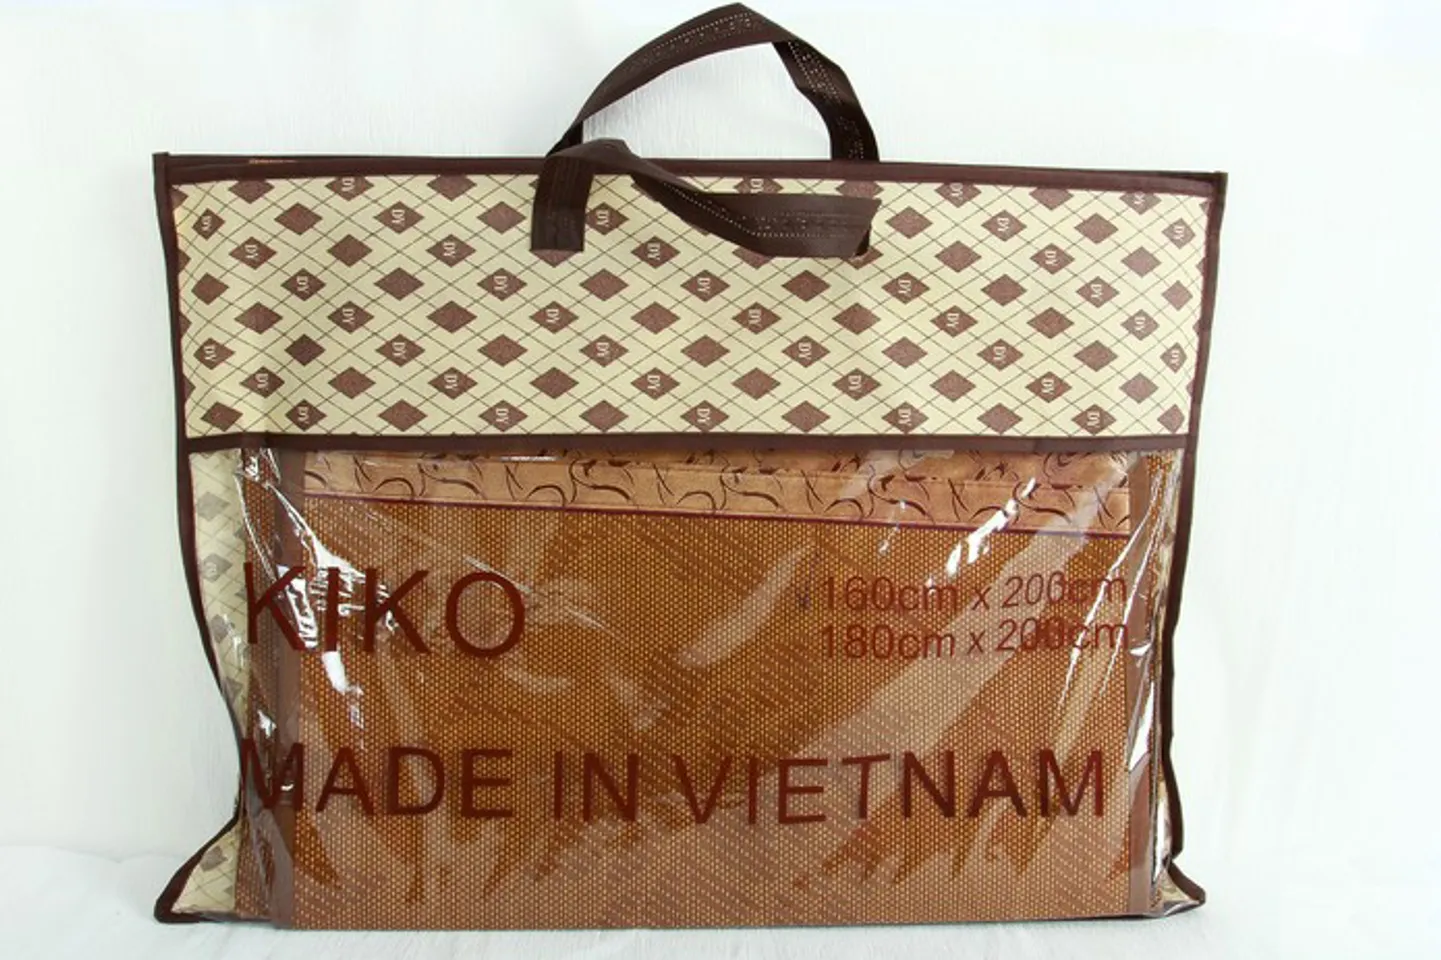 Chiếu điều hòa Kiko là một sản phẩm chăm sóc giấc ngủ có xuất xứ từ Việt Nam